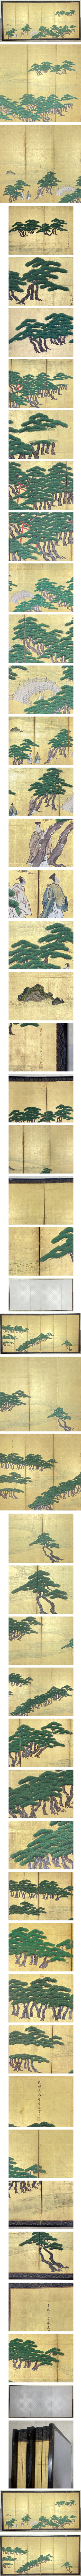 専用73　金台肉筆 藤原国信 画 松林に人物図 屏風 高さ 約175cm 六曲一双 松 人物画 日本画 人物、菩薩